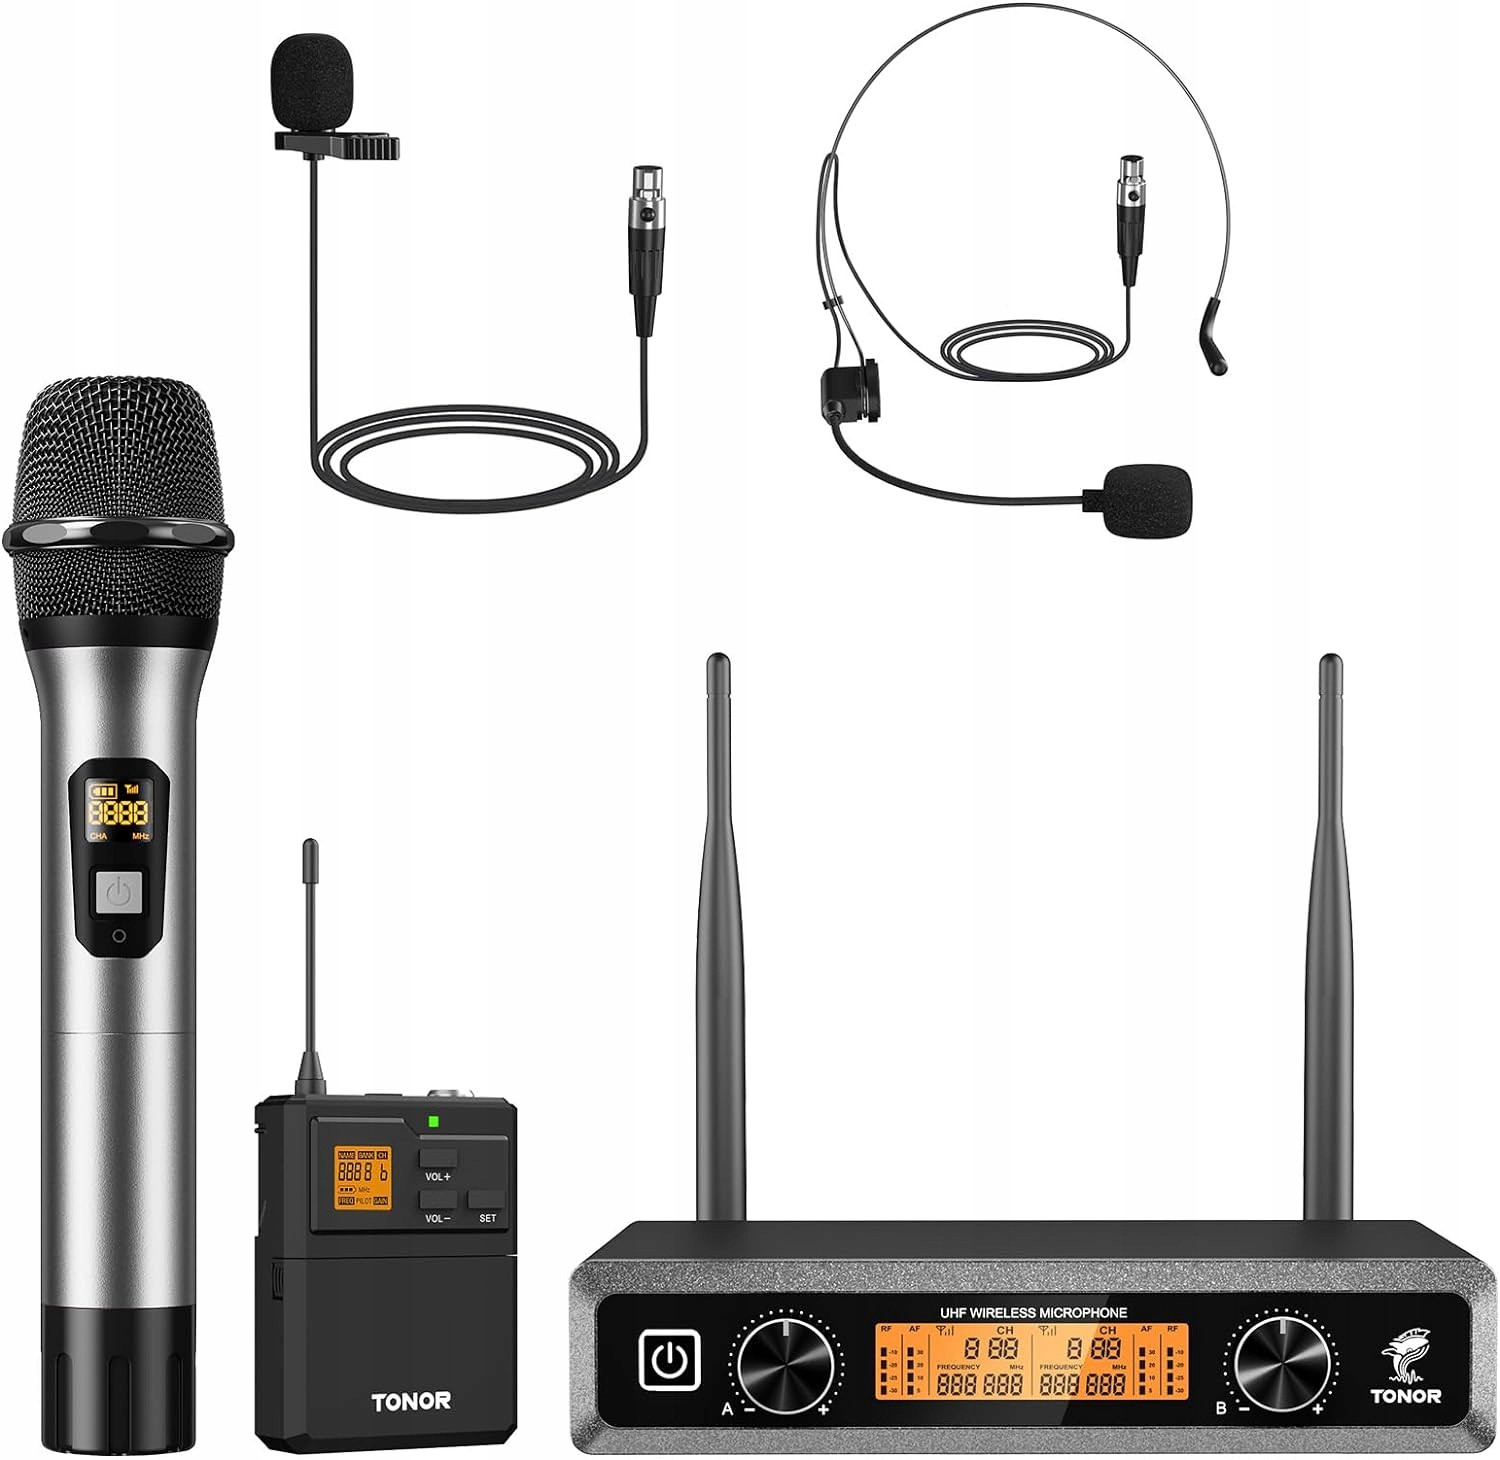 Bezdrátový mikrofonní systém Tonor Uhf s bezdrátovým mikrofonem